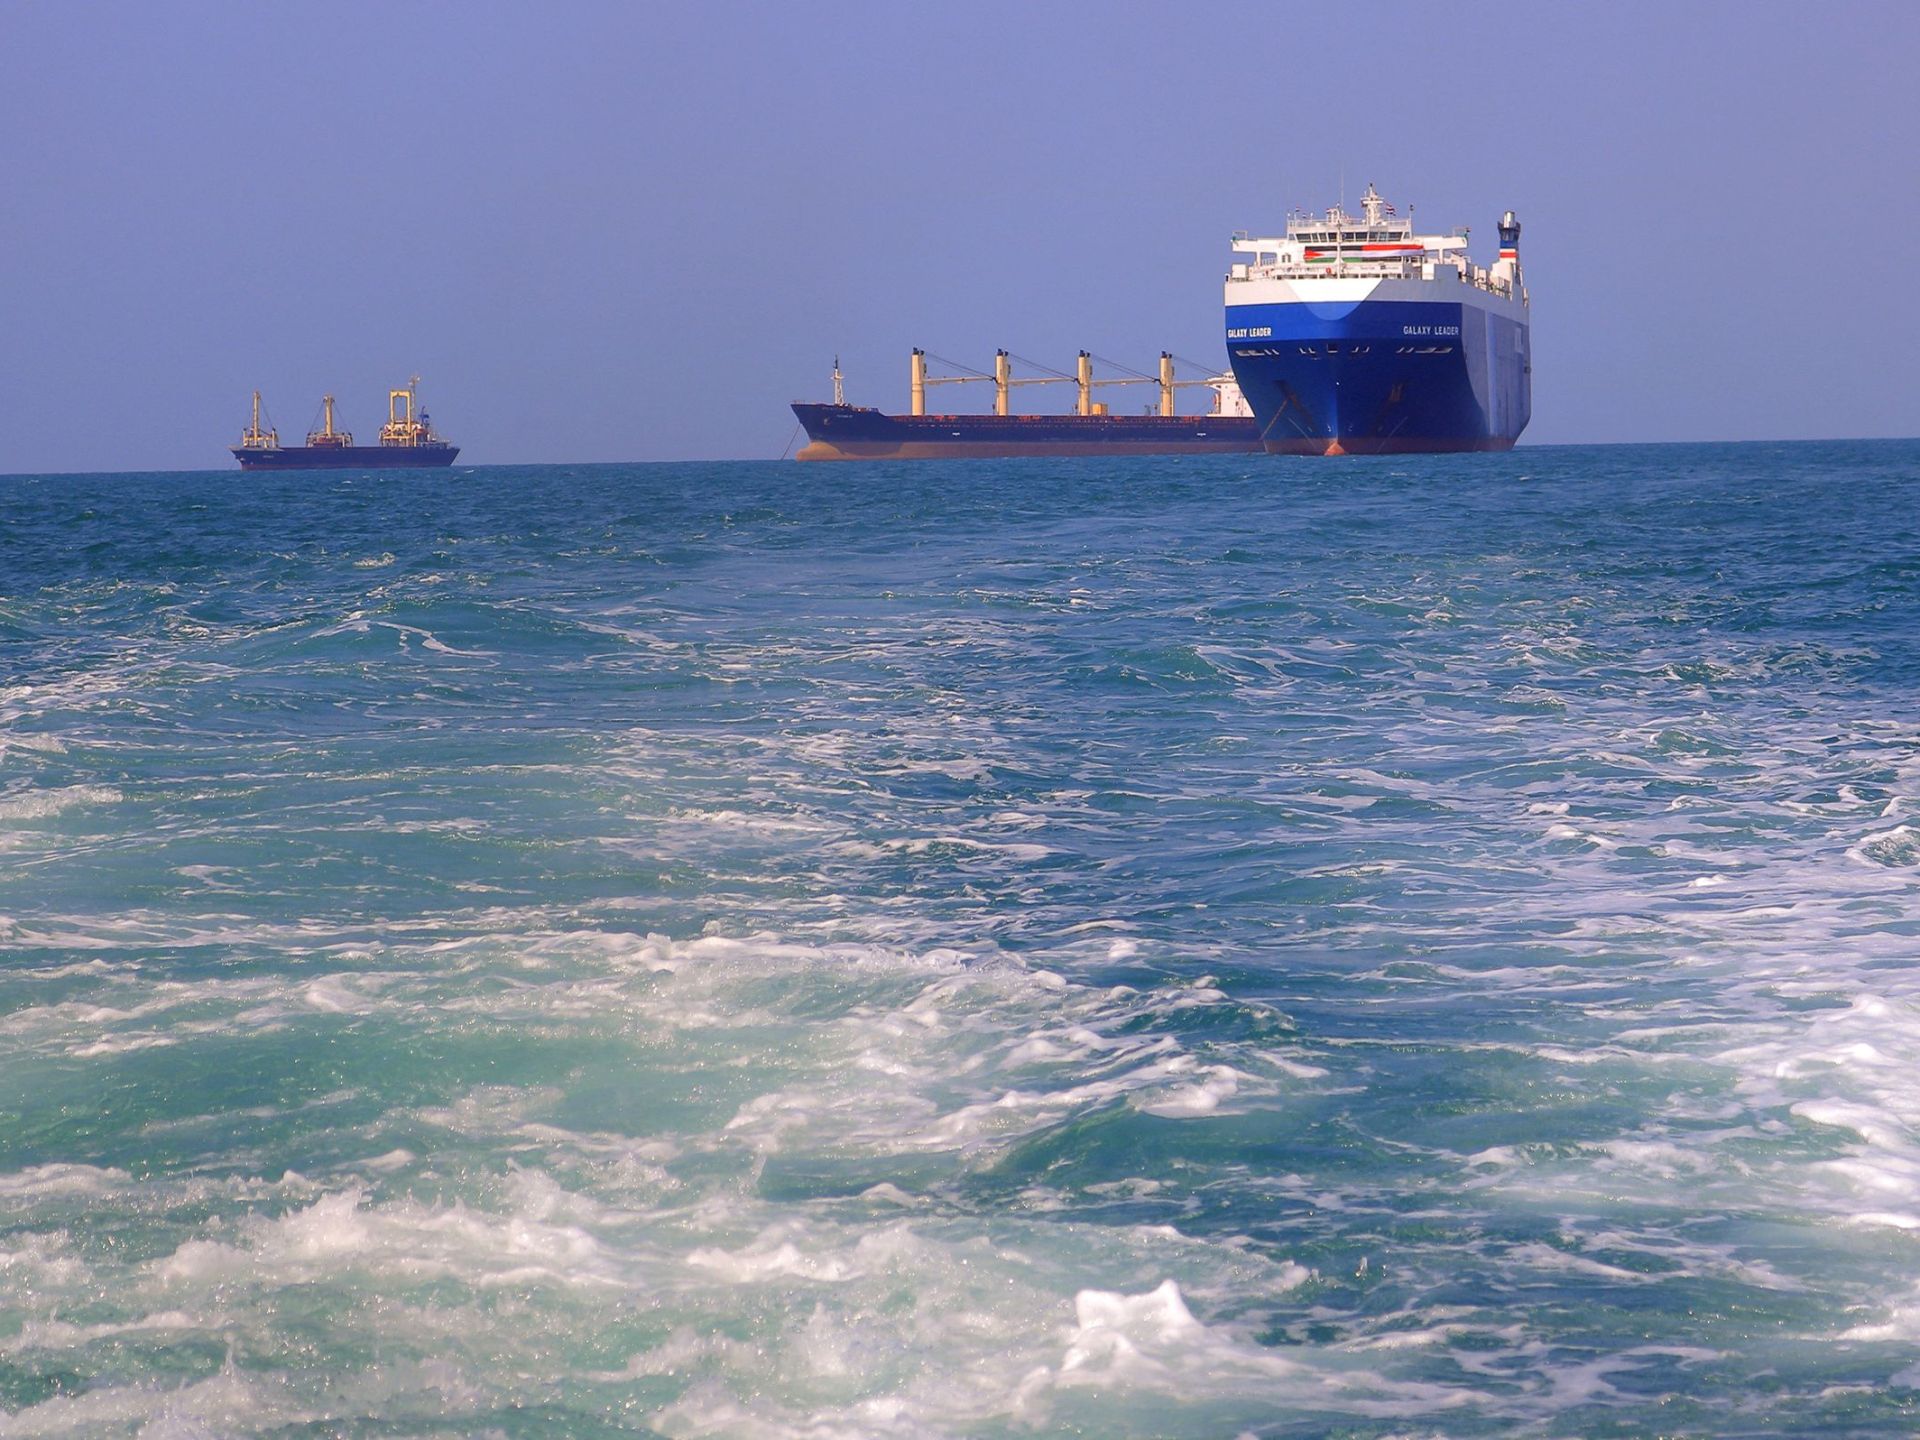 استهداف سفينة قرب جيبوتي والاتحاد الأوروبي يبدأ مهمة عسكرية في البحر الأحمر | أخبار – البوكس نيوز